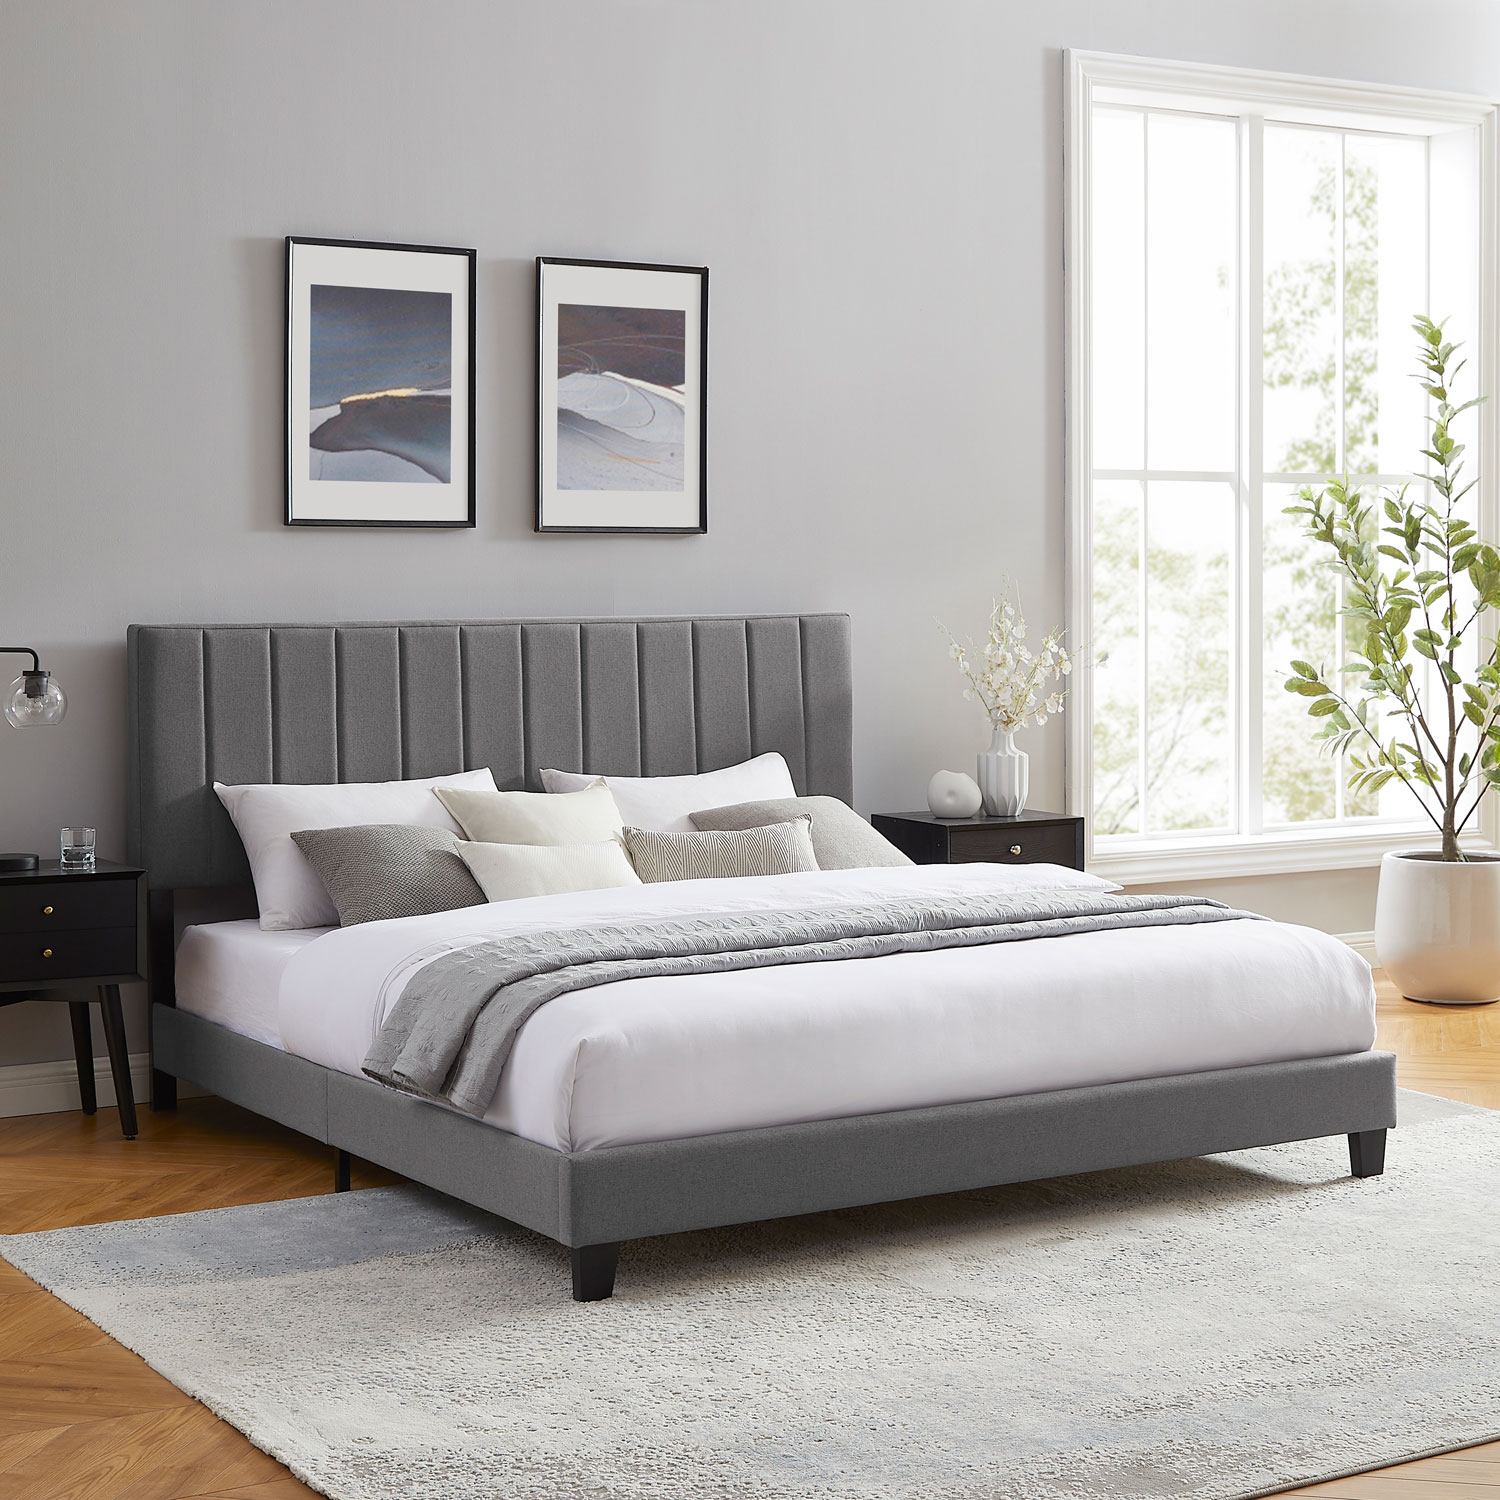 Liore Transitional Upholstered Platform Bed - King - Dark Grey